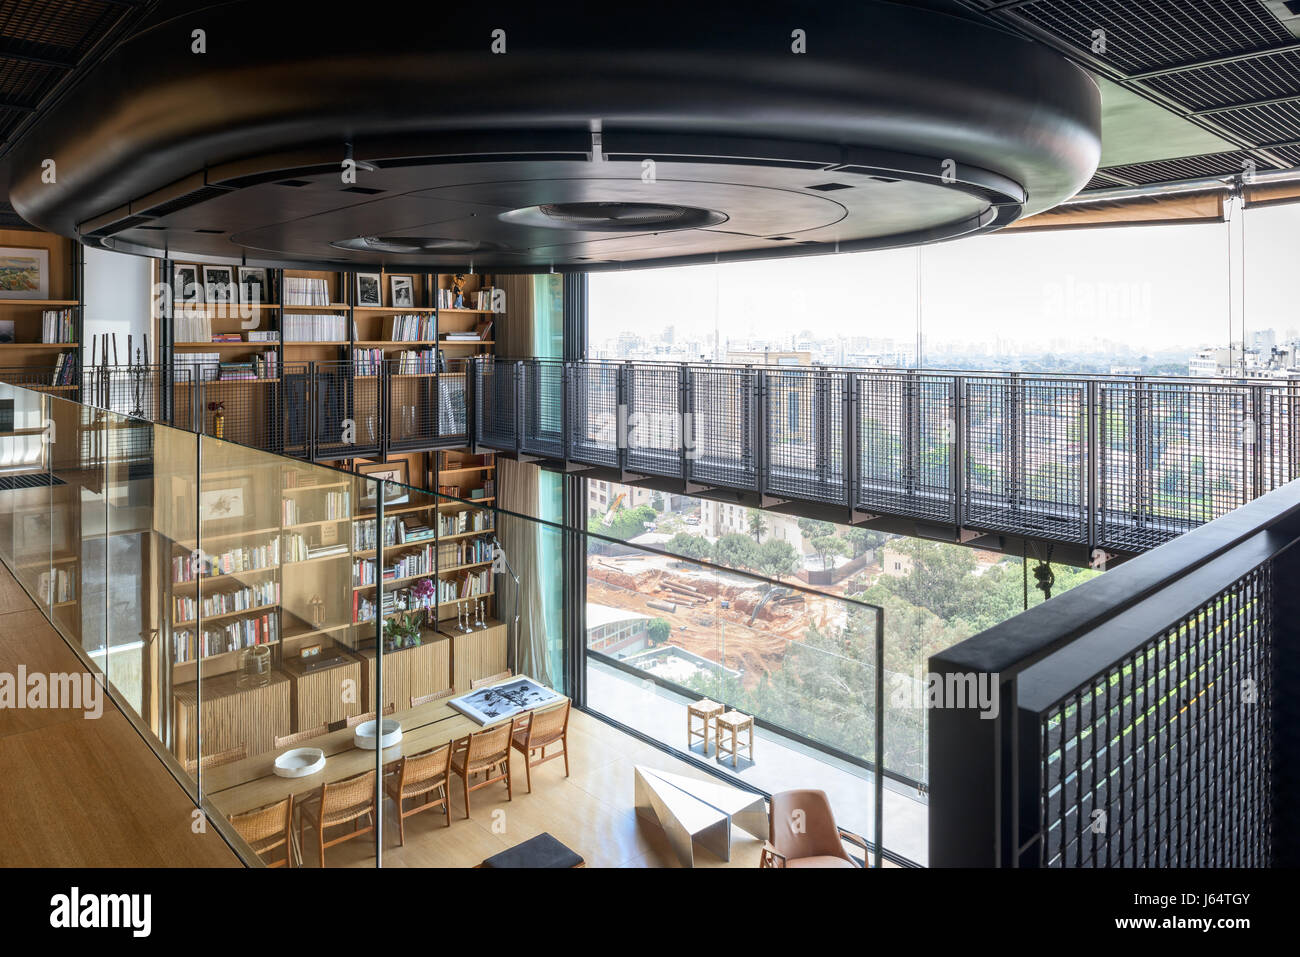 Vue depuis la mezzanine avec balustrade de verre hauteur double spacieux espace de vie avec une vue sur Beyrouth. Le climatiseur est couverte dans une finition mate Banque D'Images